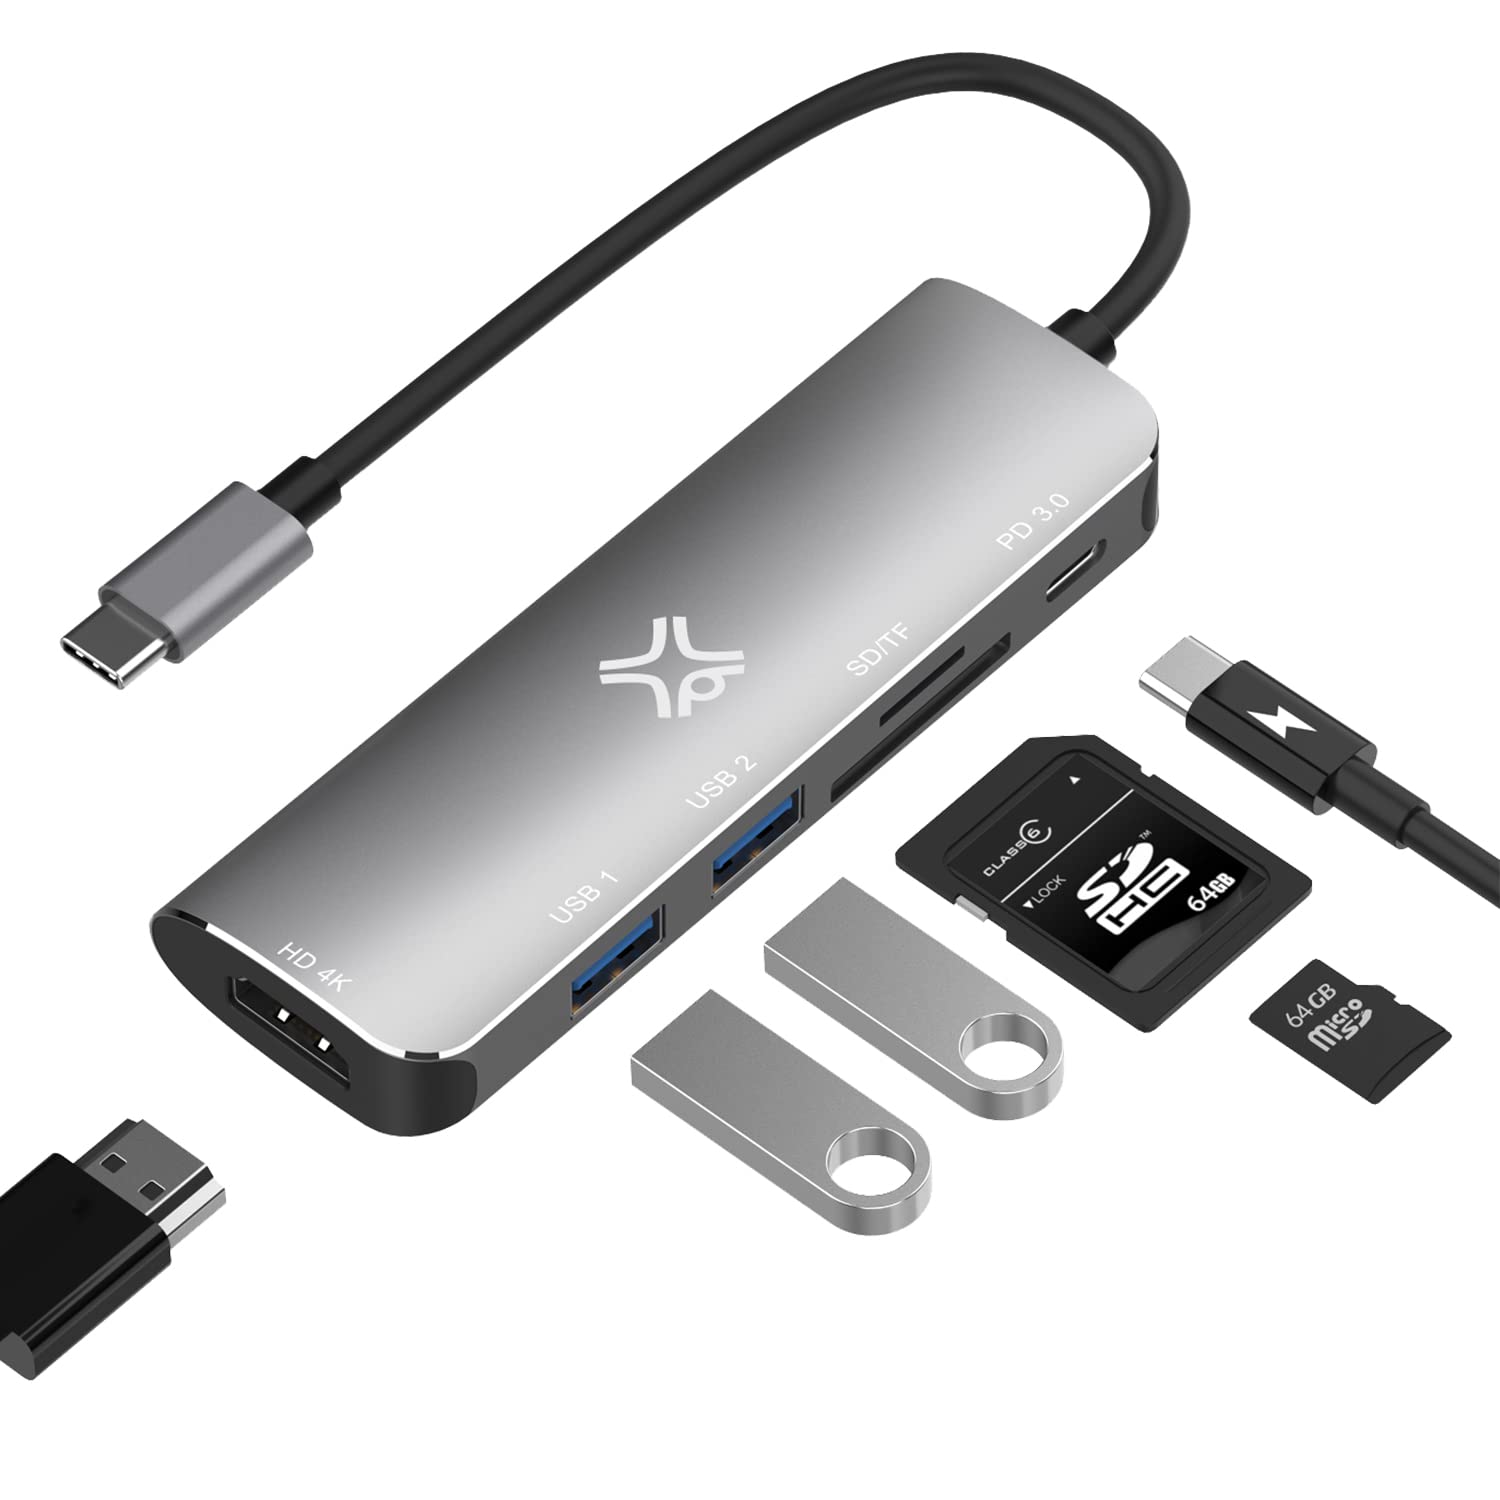 XtremeMac Hochleistungs-USB-C Hub für MacBook, USB 3.0, SD/Micro-Kartenleser, 4K HDMI & Type-C PD. Kompatibel mit SD, SDHC, SDXC Speicherkarten, Space Grey